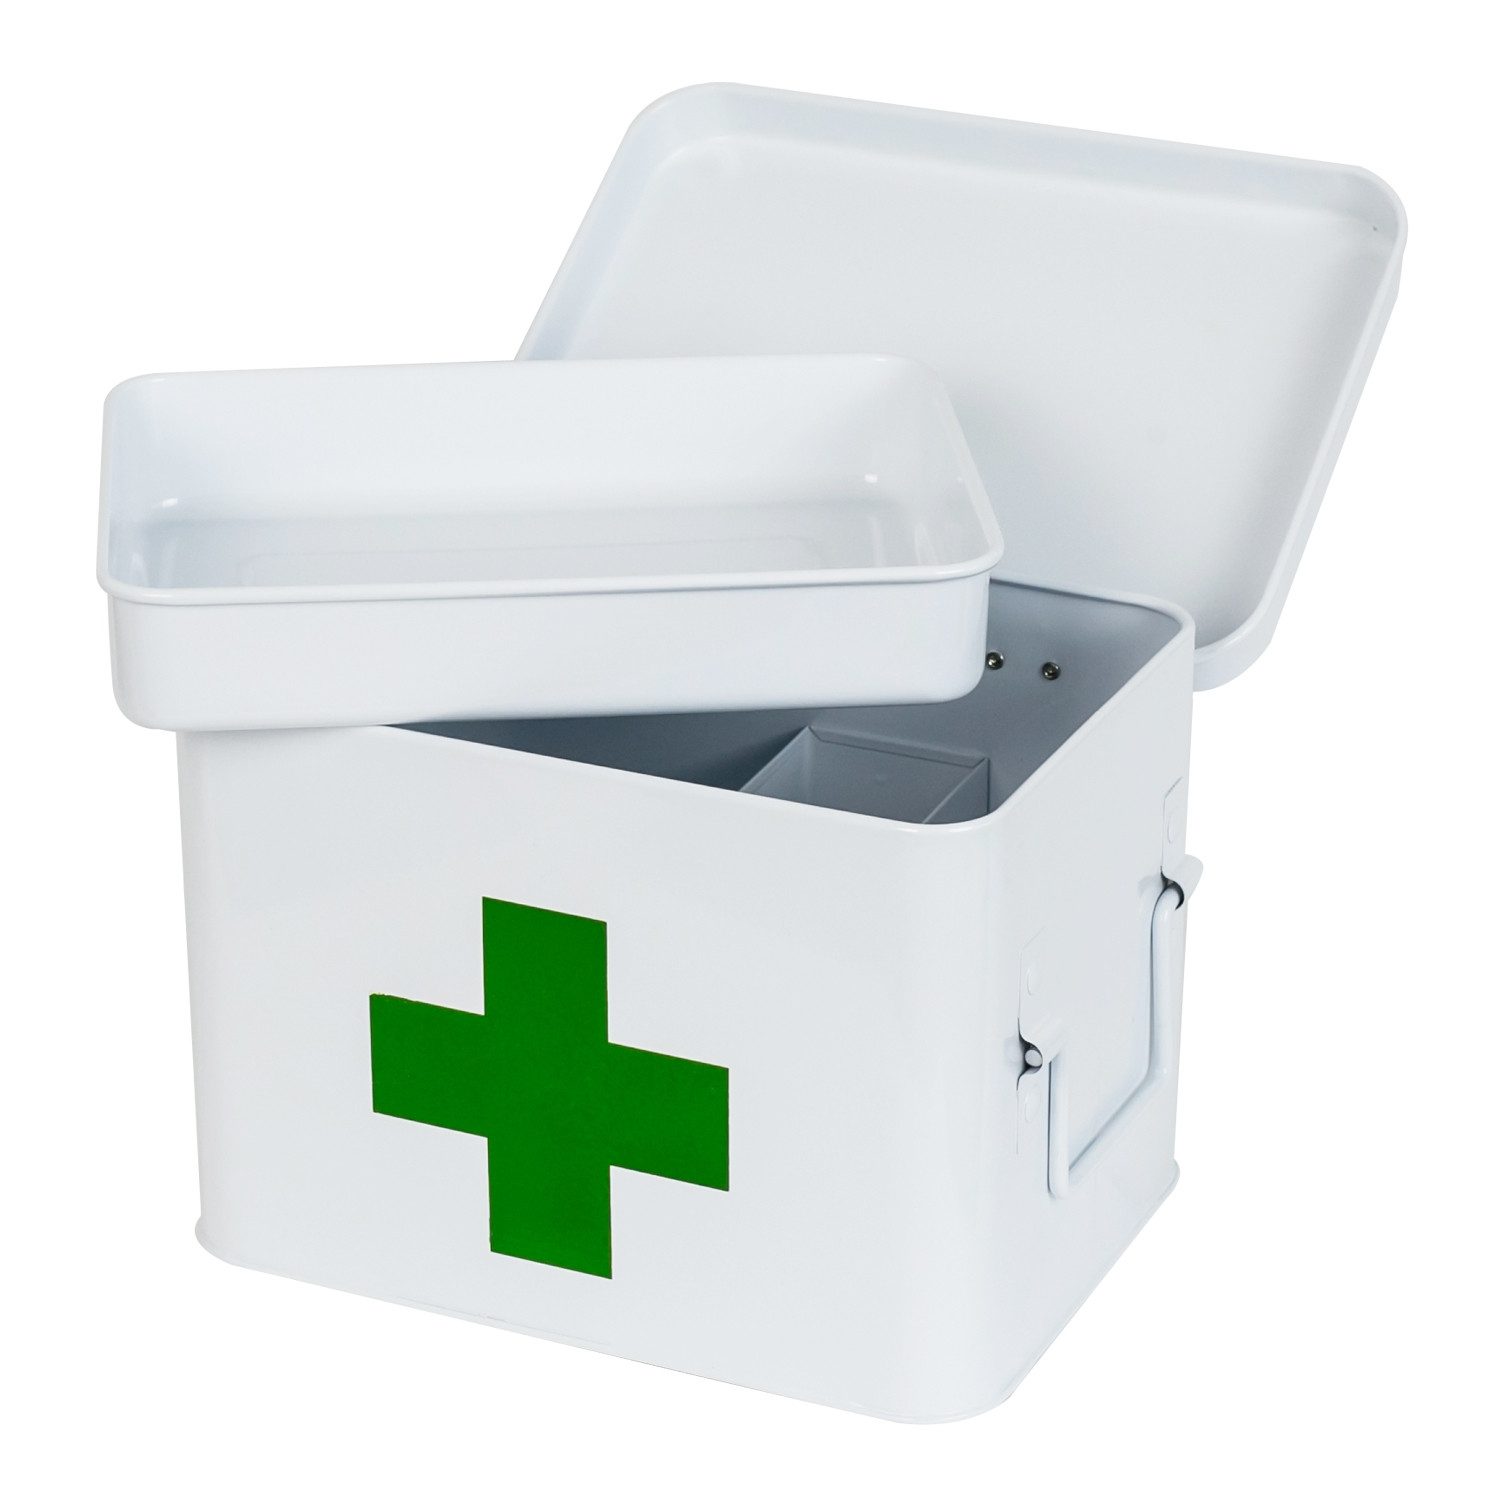 HMF Erste-Hilfe-Koffer Medizinkoffer, Hausapotheke, Medikamentenkoffer aus Metall, mit Tragegriffen, 22,5 x 16,5 x 15,5 cm, weiß